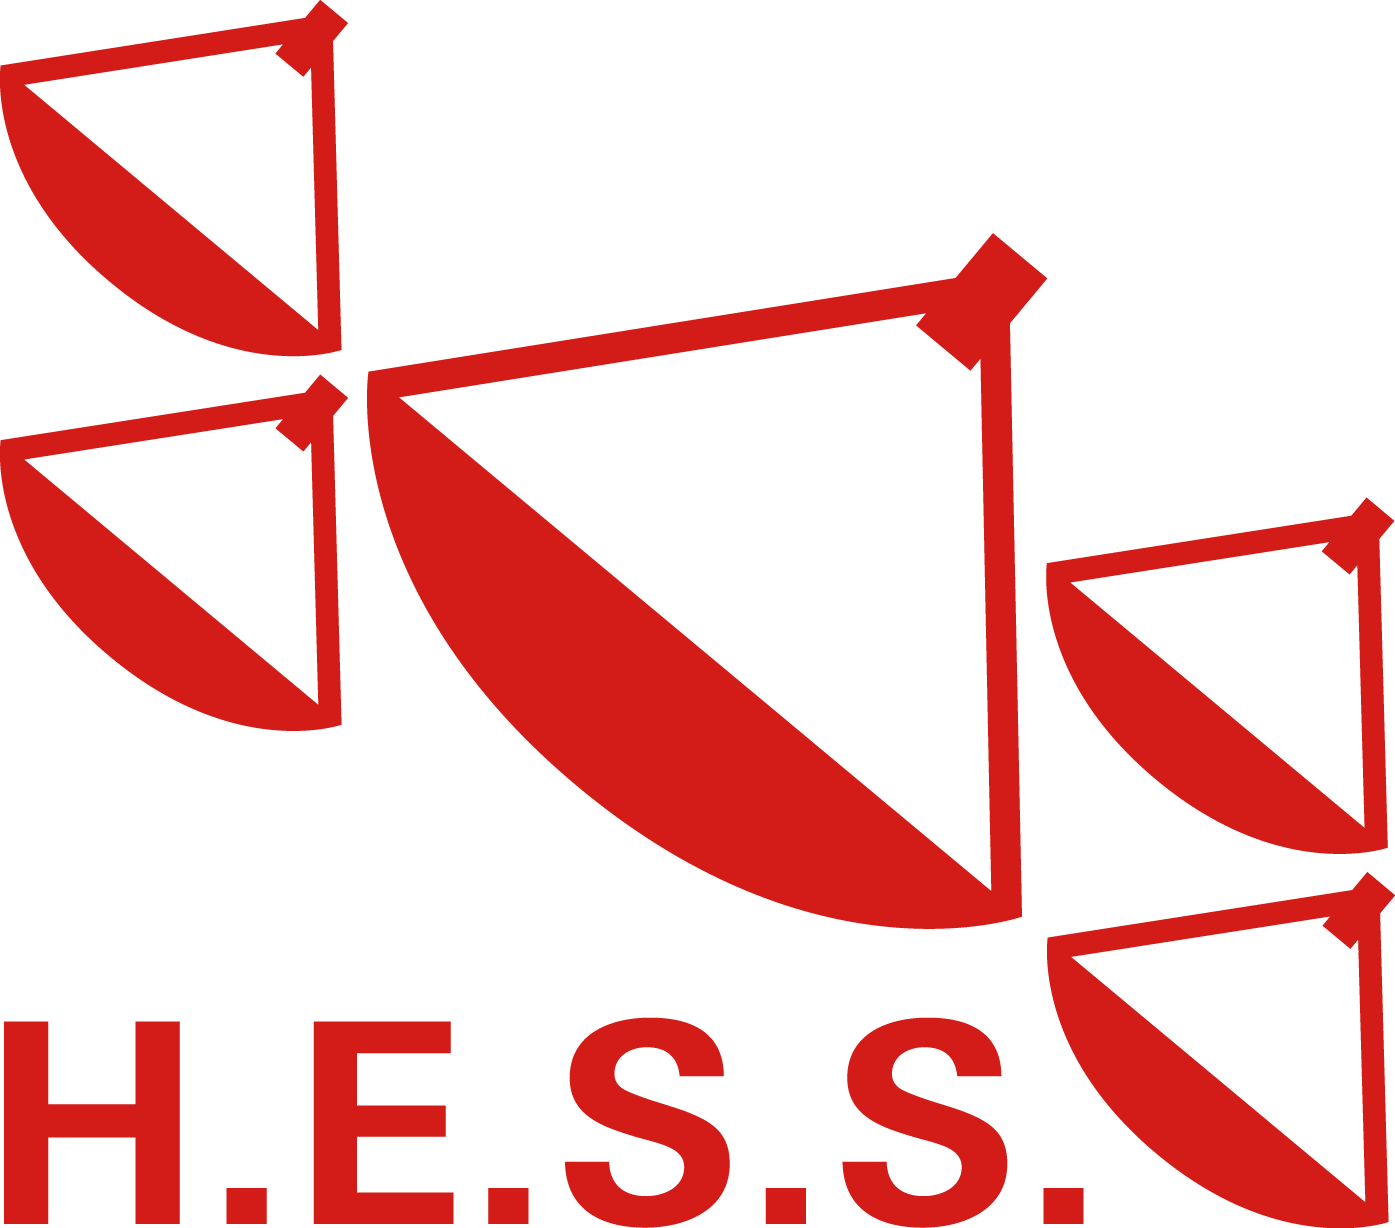 HESS Logo